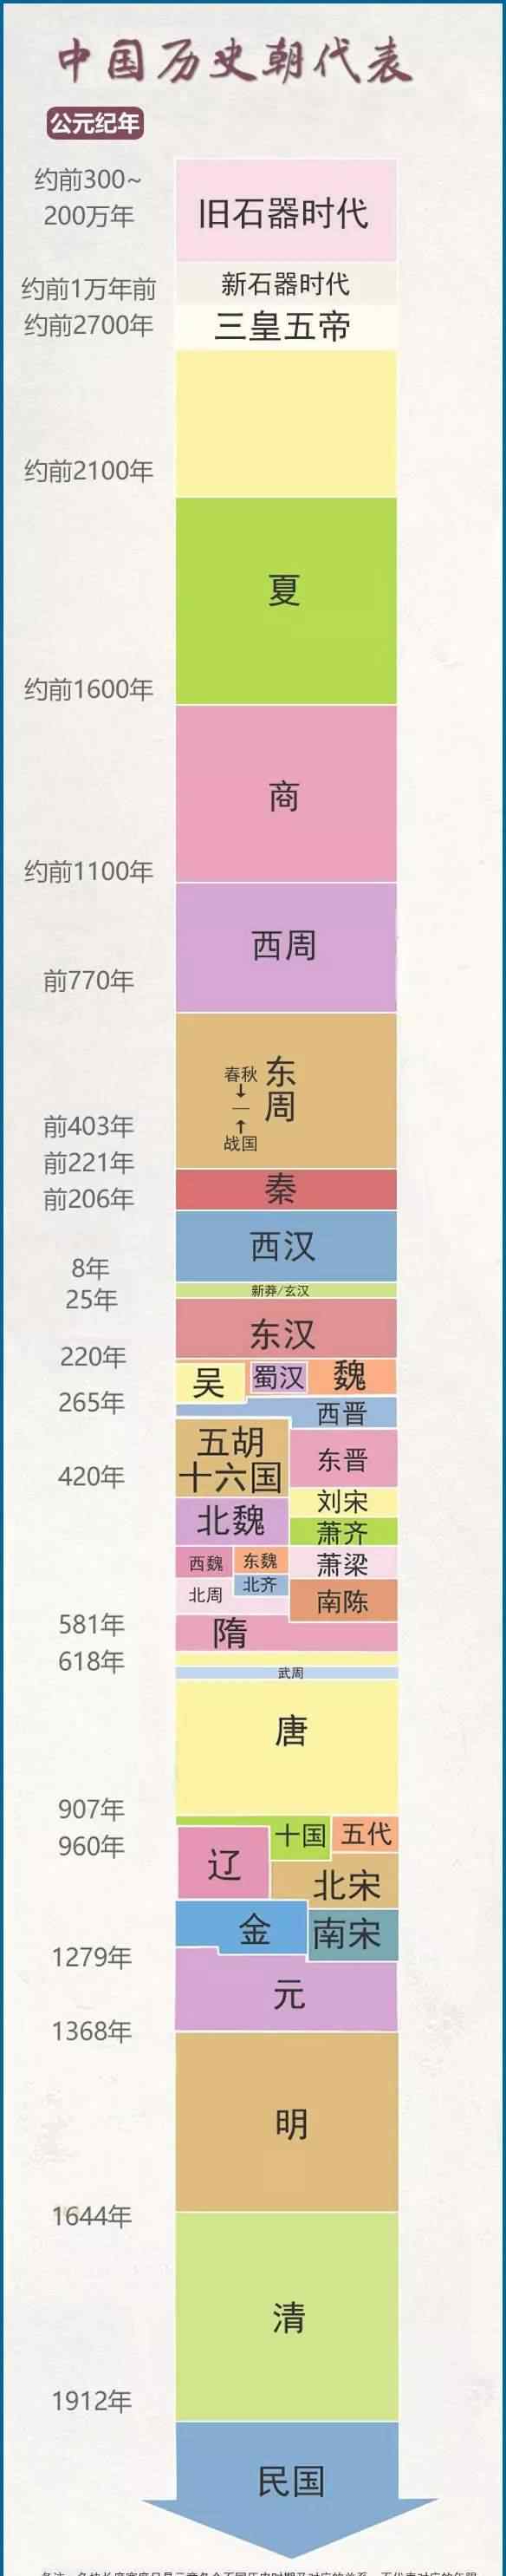 古代王朝顺序表 一图看懂中国历史朝代更替，后附顺口溜